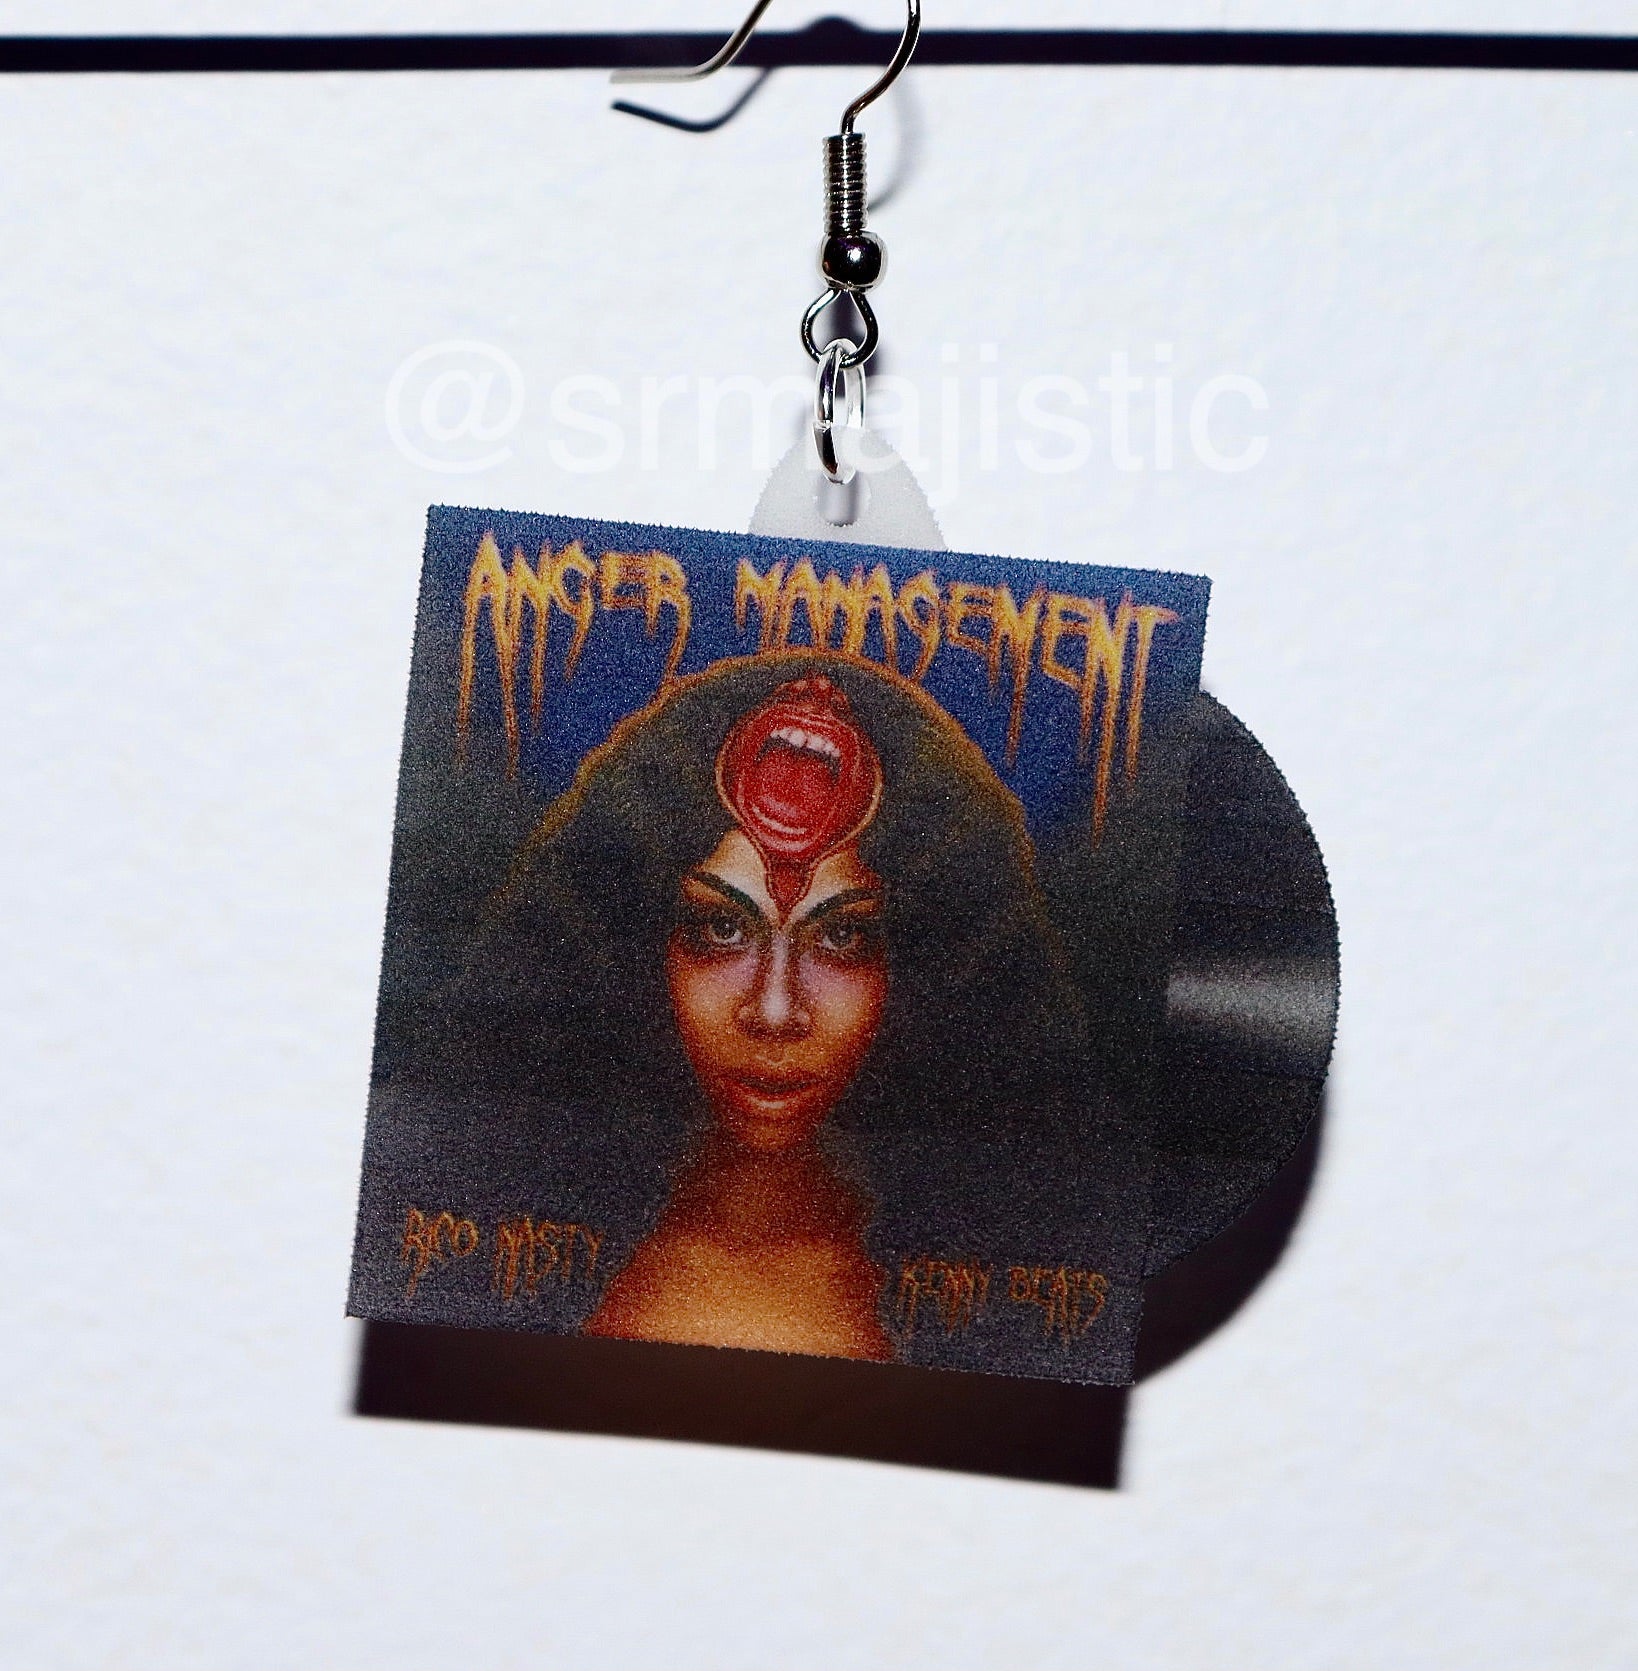 Rico Nasty Anger Management Vinyl Album Handmade Earrings!